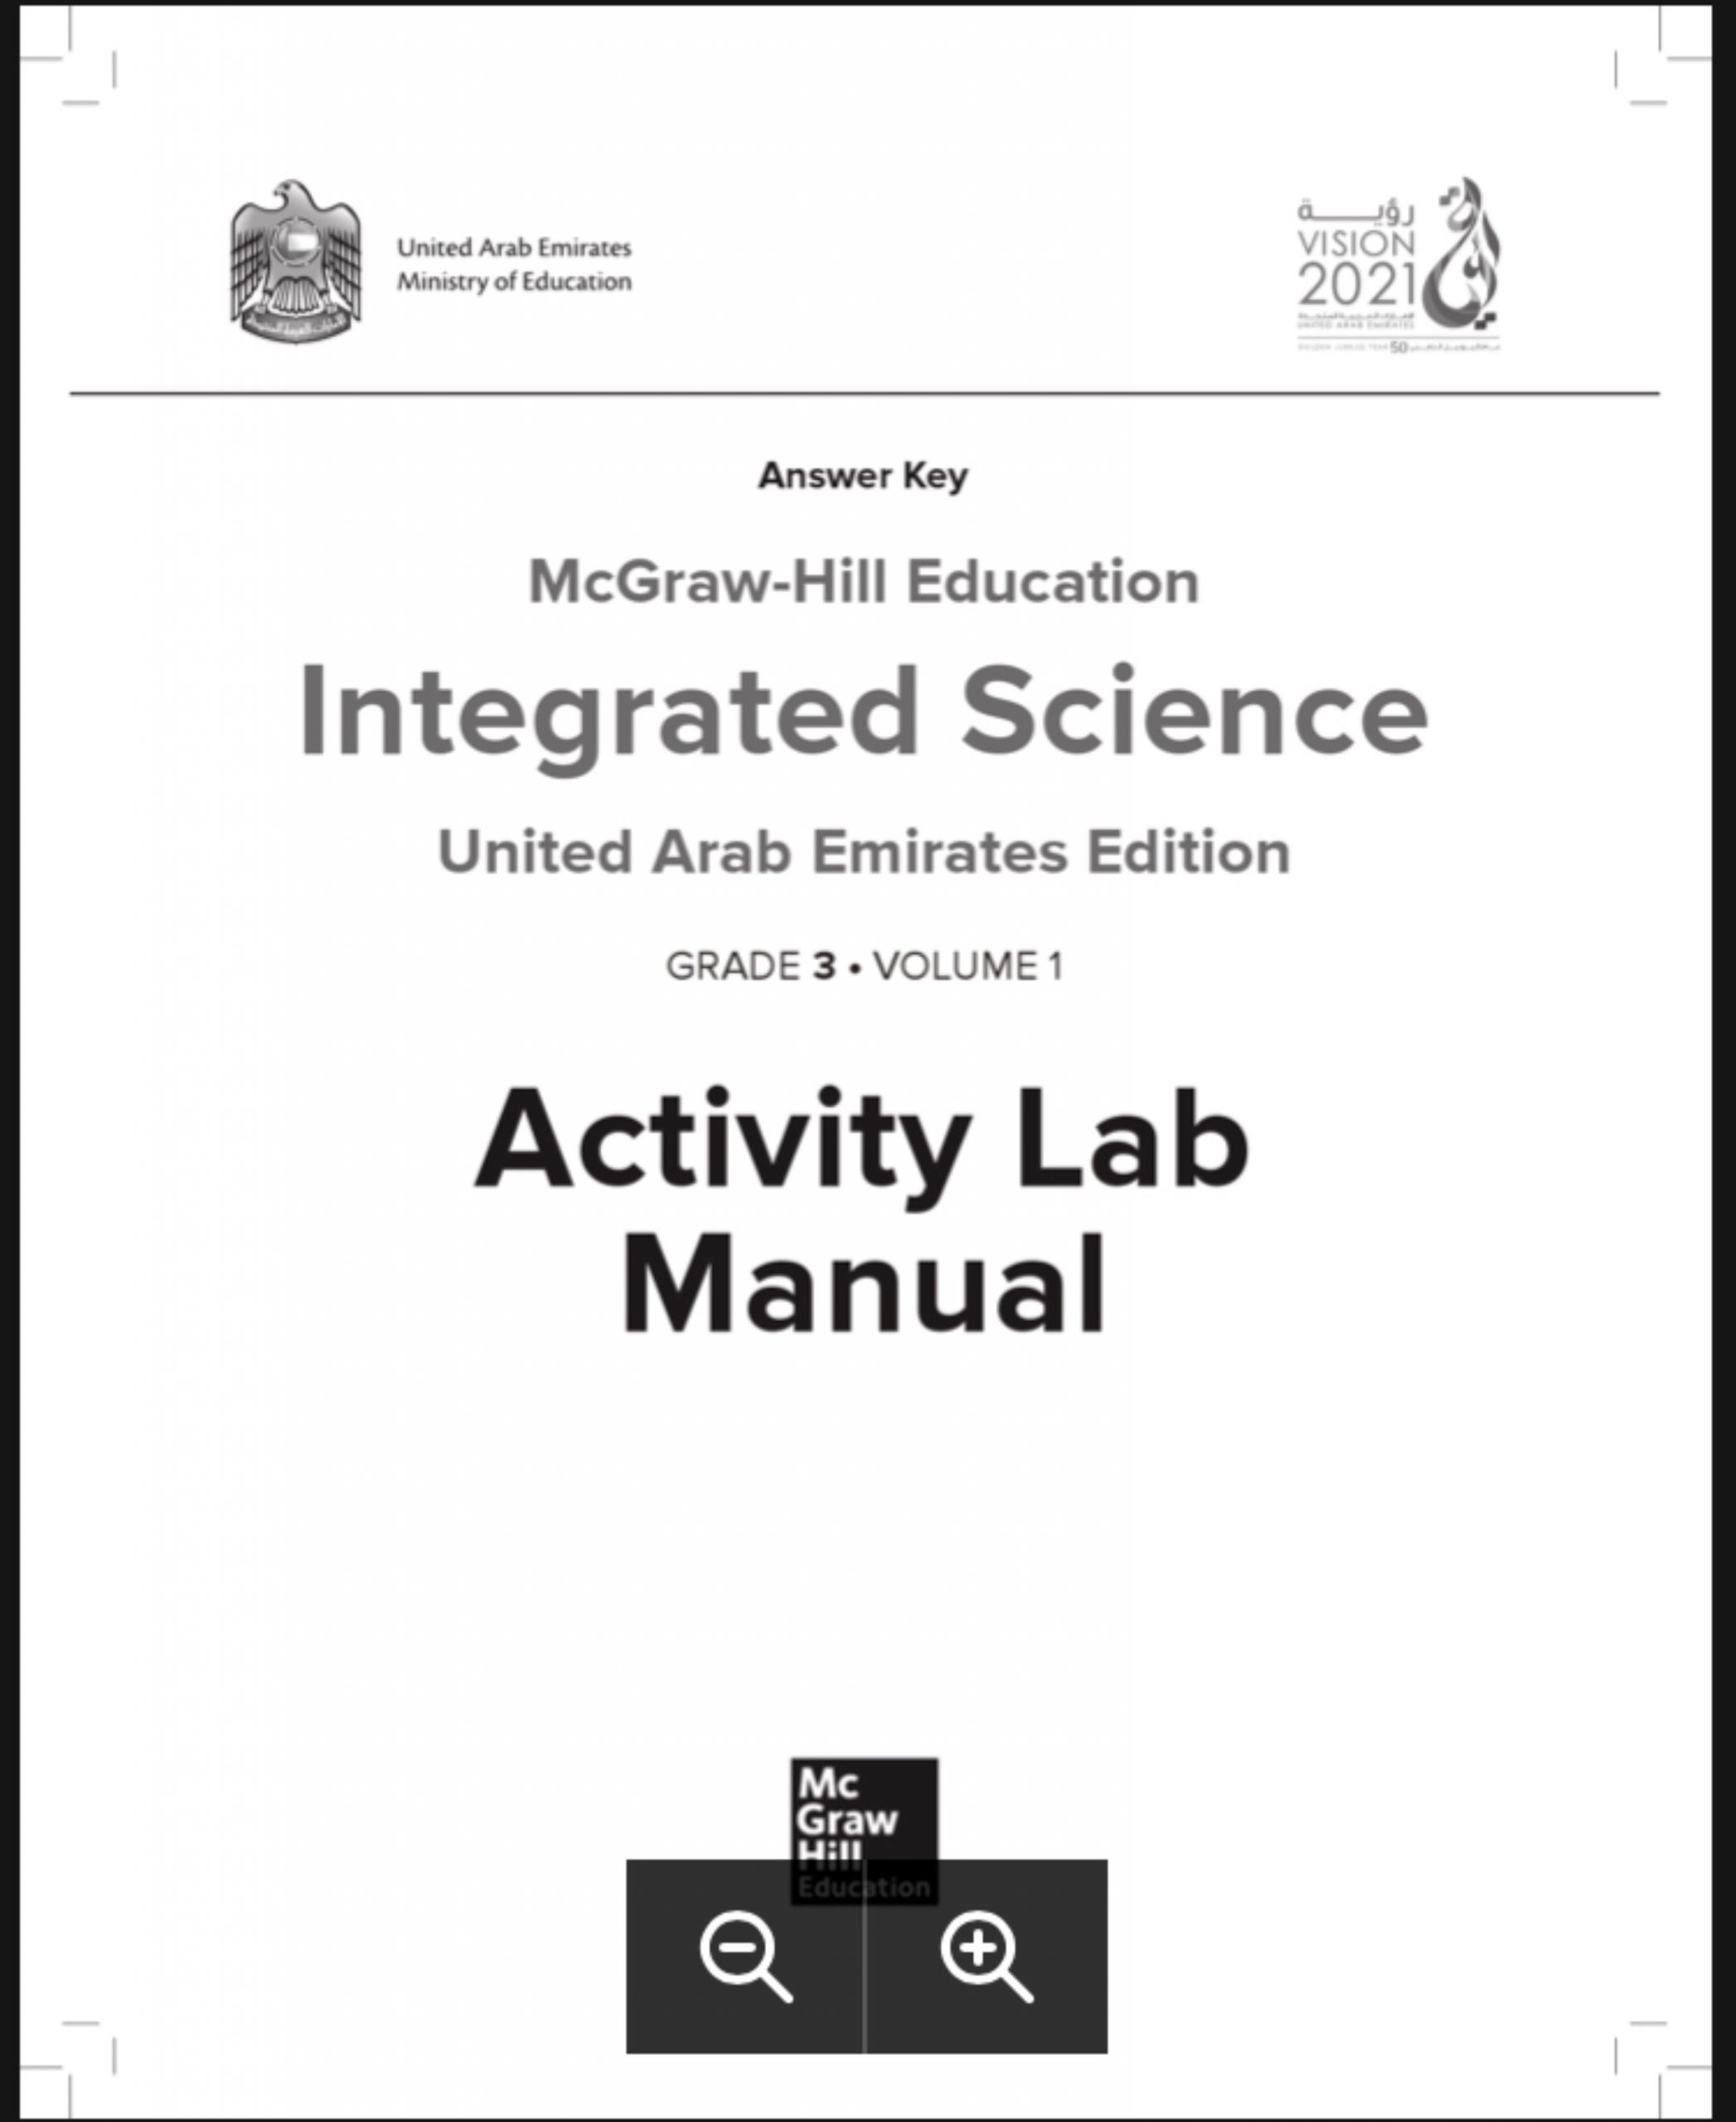 كتاب الطالب activity lab بالانجليزي مع الاجابات للصف الثالث مادة العلوم المتكاملة